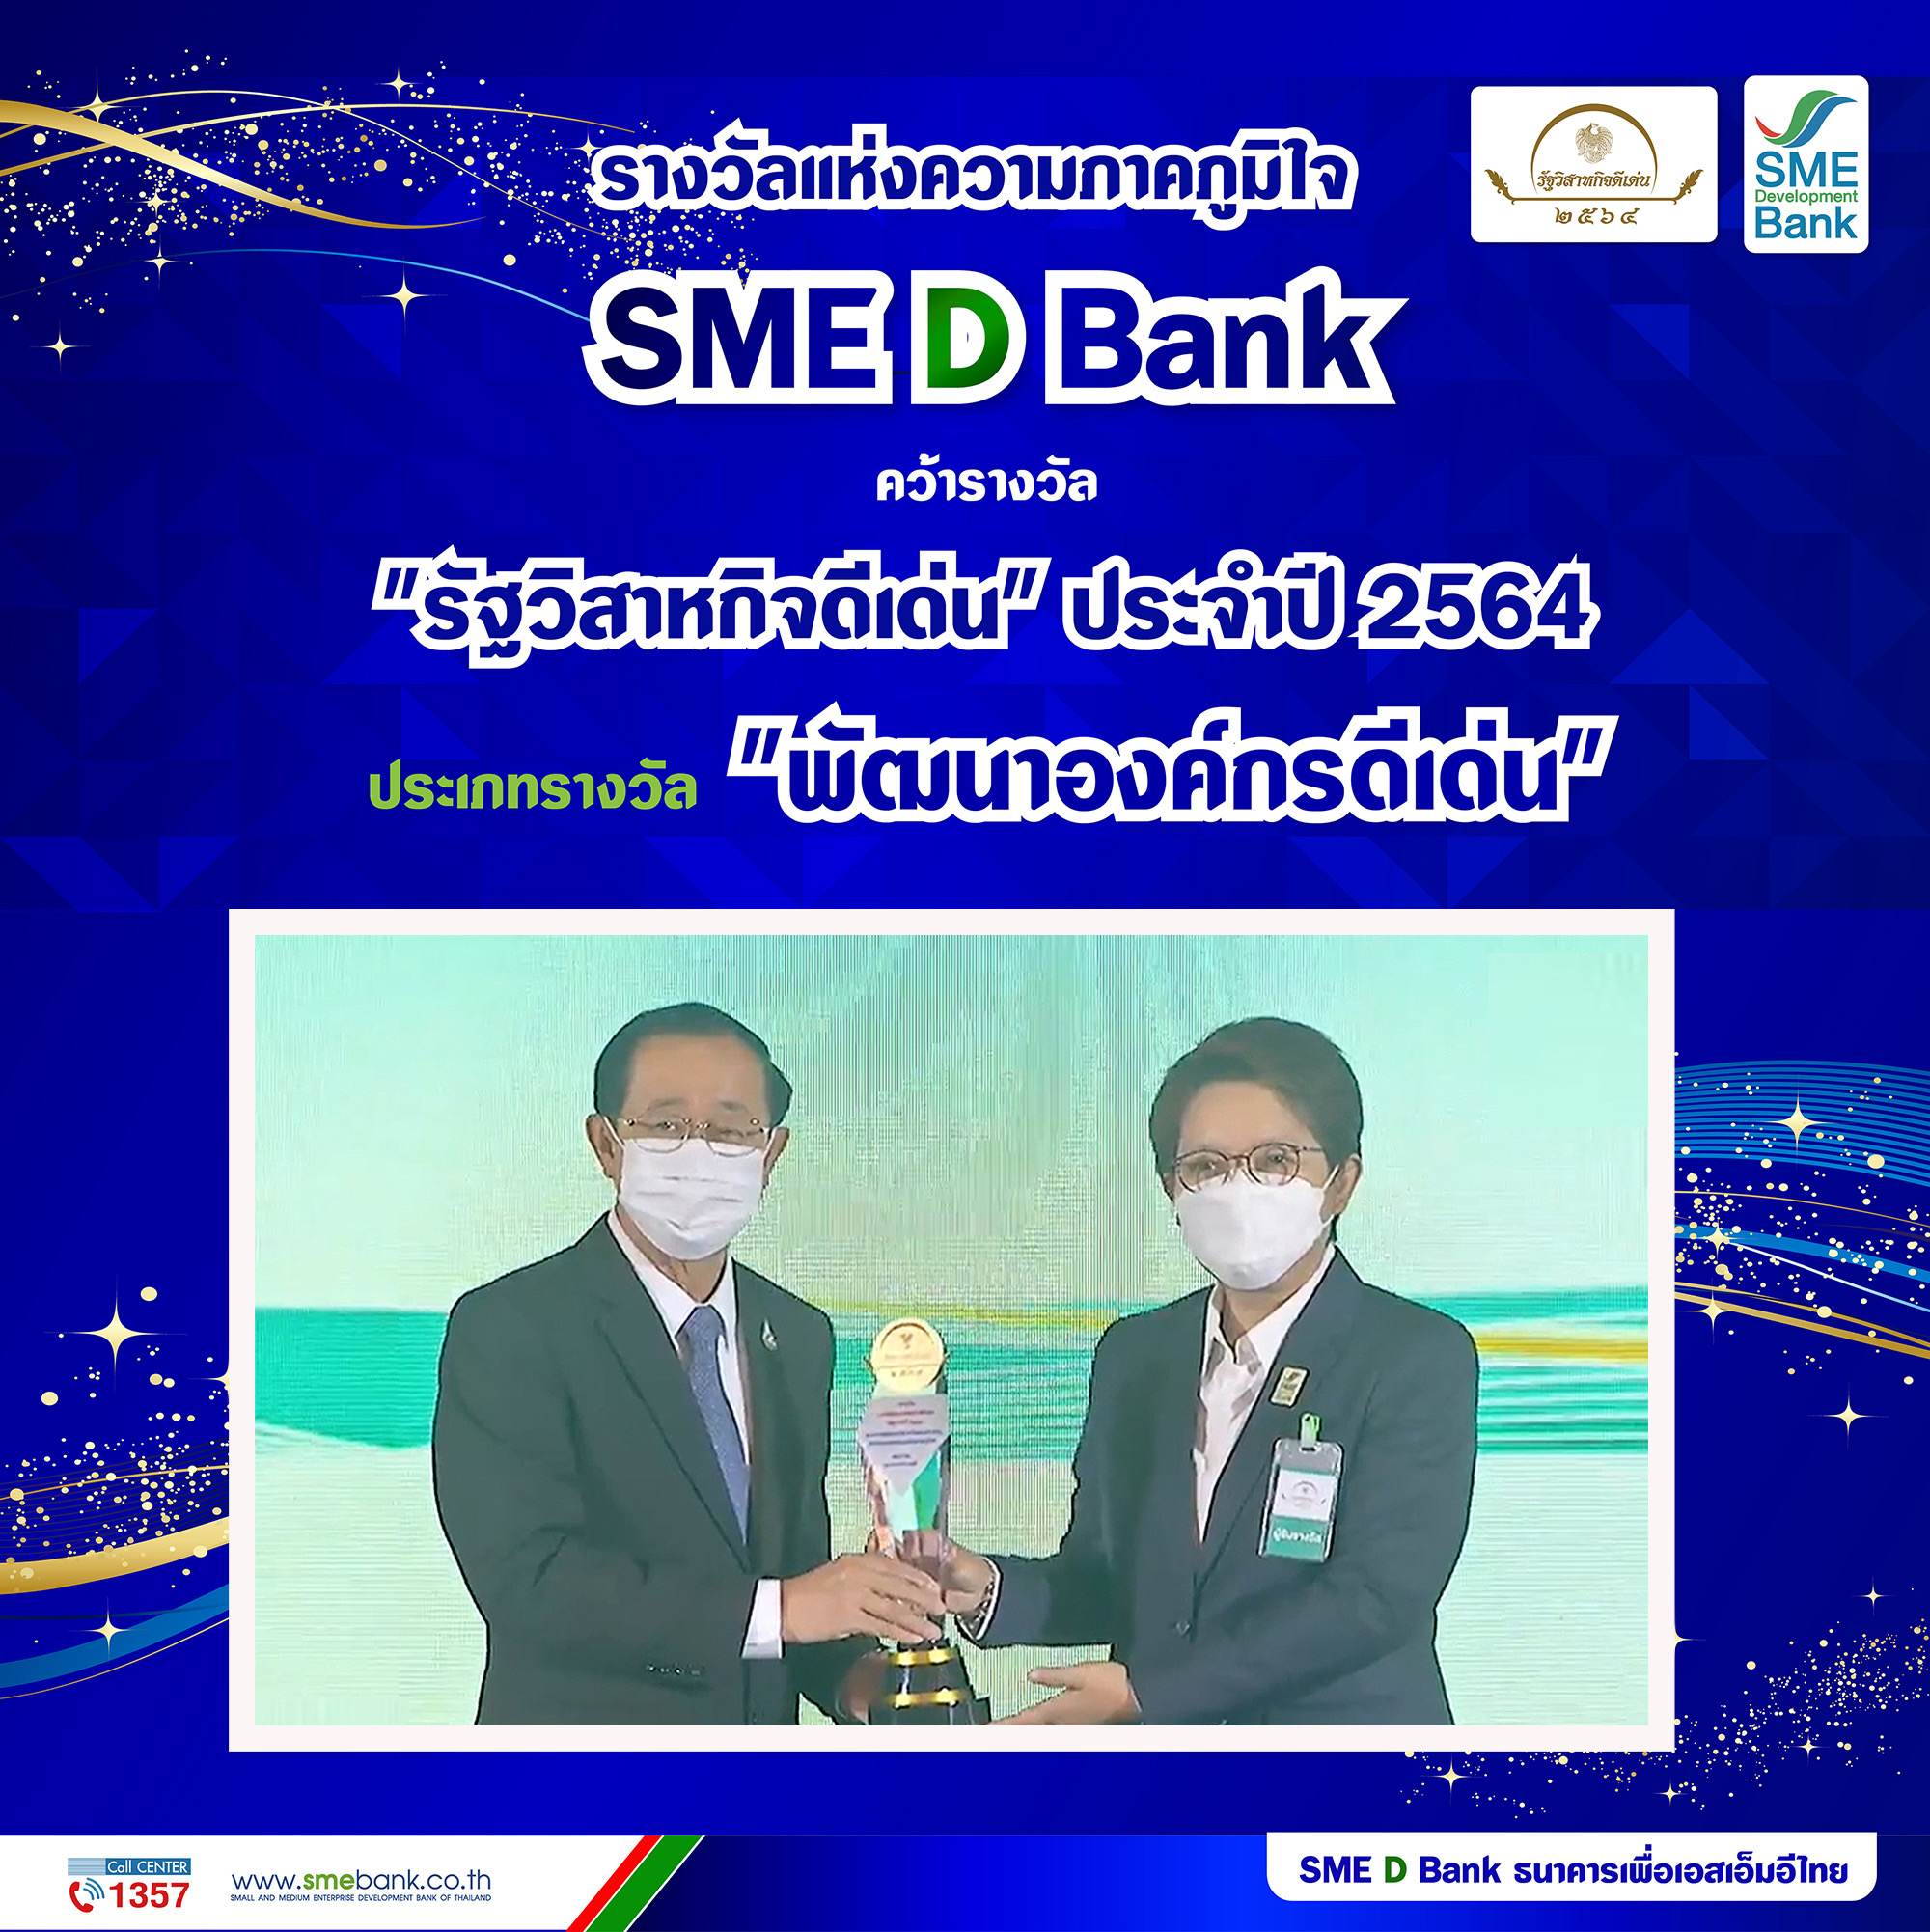 SME D Bank คว้ารางวัลรัฐวิสาหกิจดีเด่น ปี 64 ประเภท ‘พัฒนาองค์กรดีเด่น’